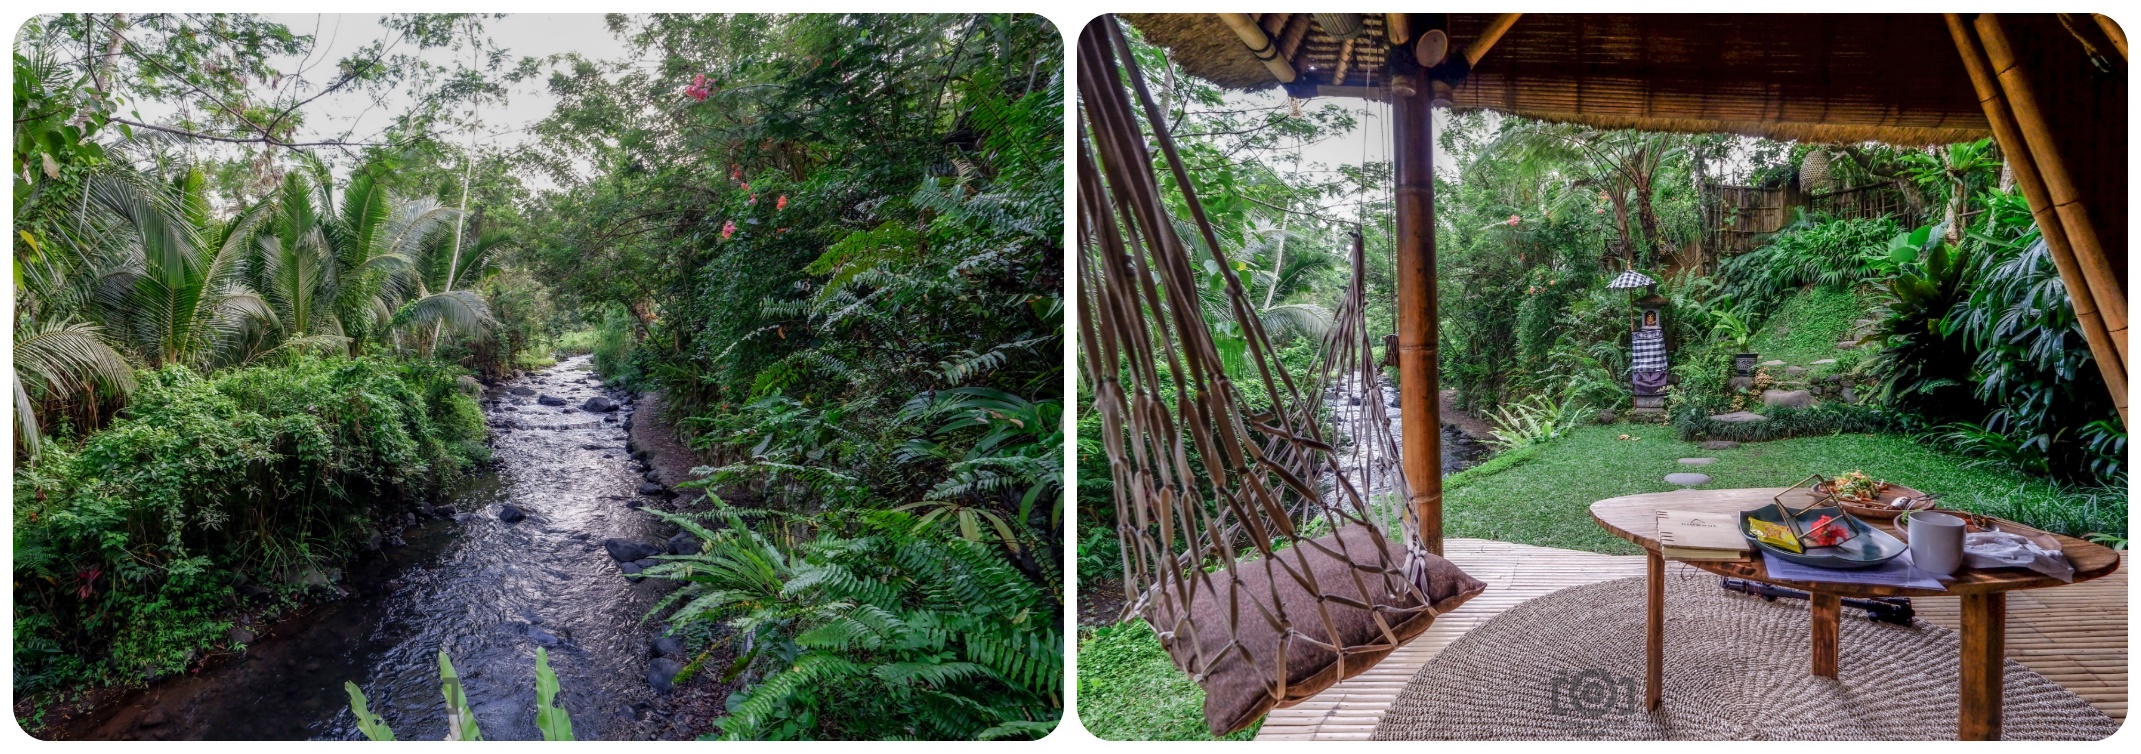 Tìm bình yên trong ngôi nhà tre ẩn mình giữa núi rừng Bali - 5